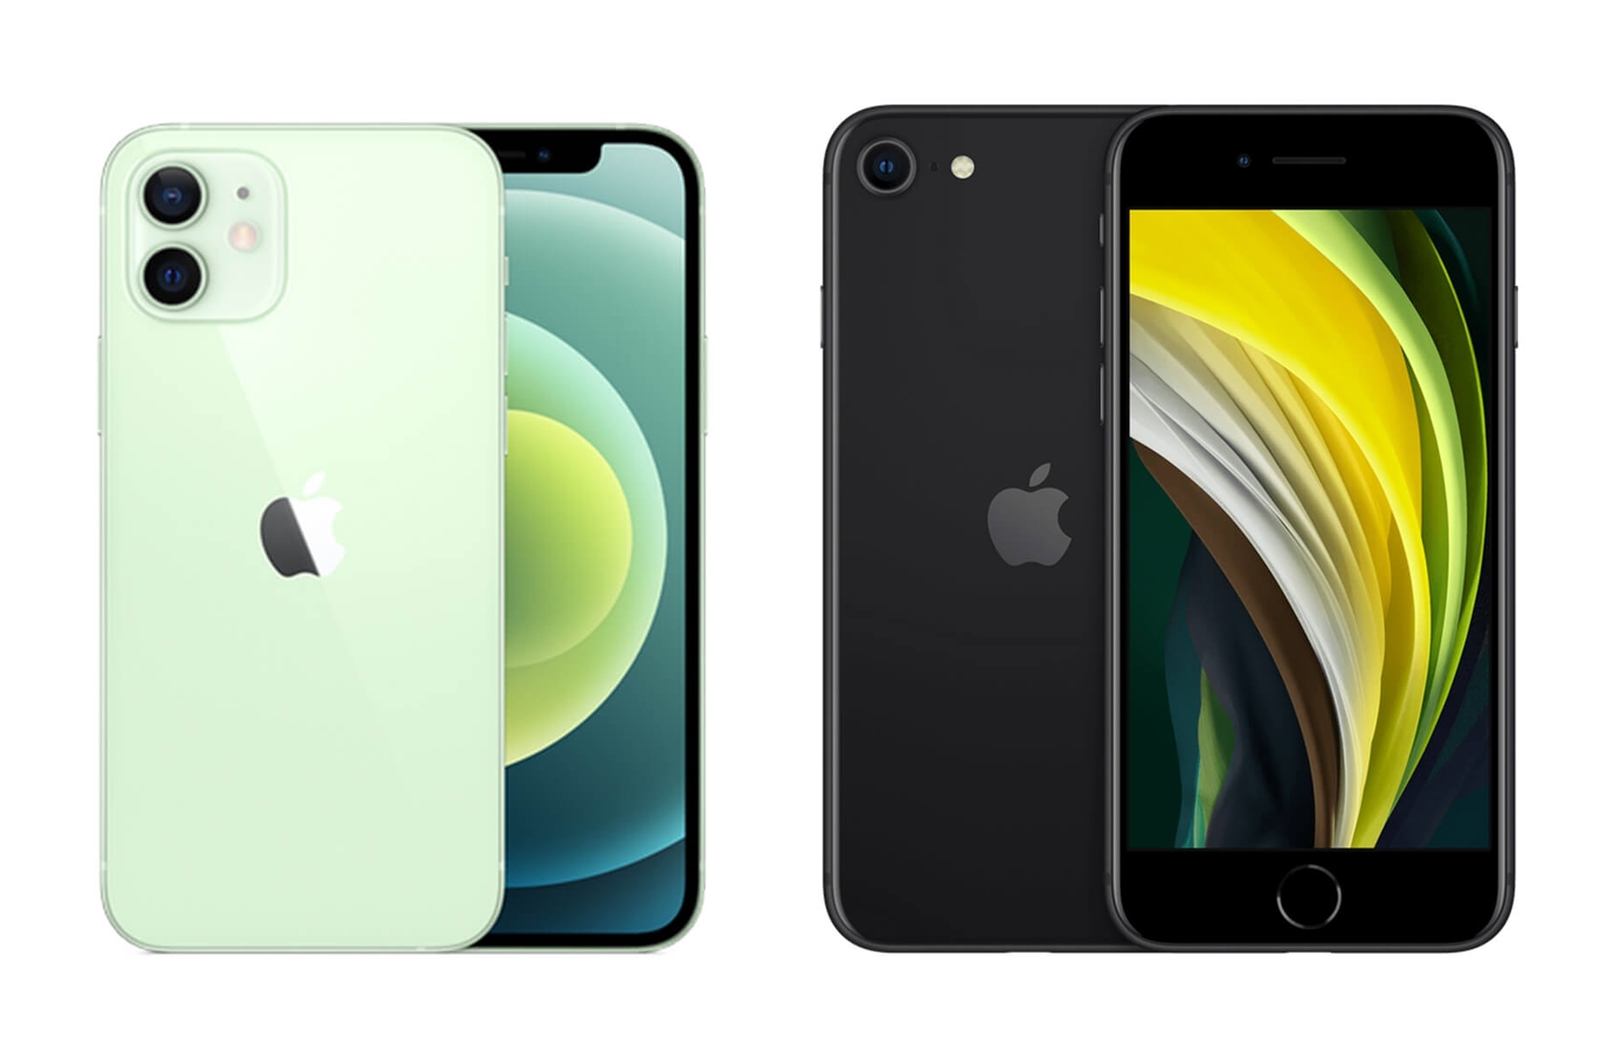 【手機專知】iPhone 12 mini跟SE 2020的不同差異為何?消費者該怎麼選擇?